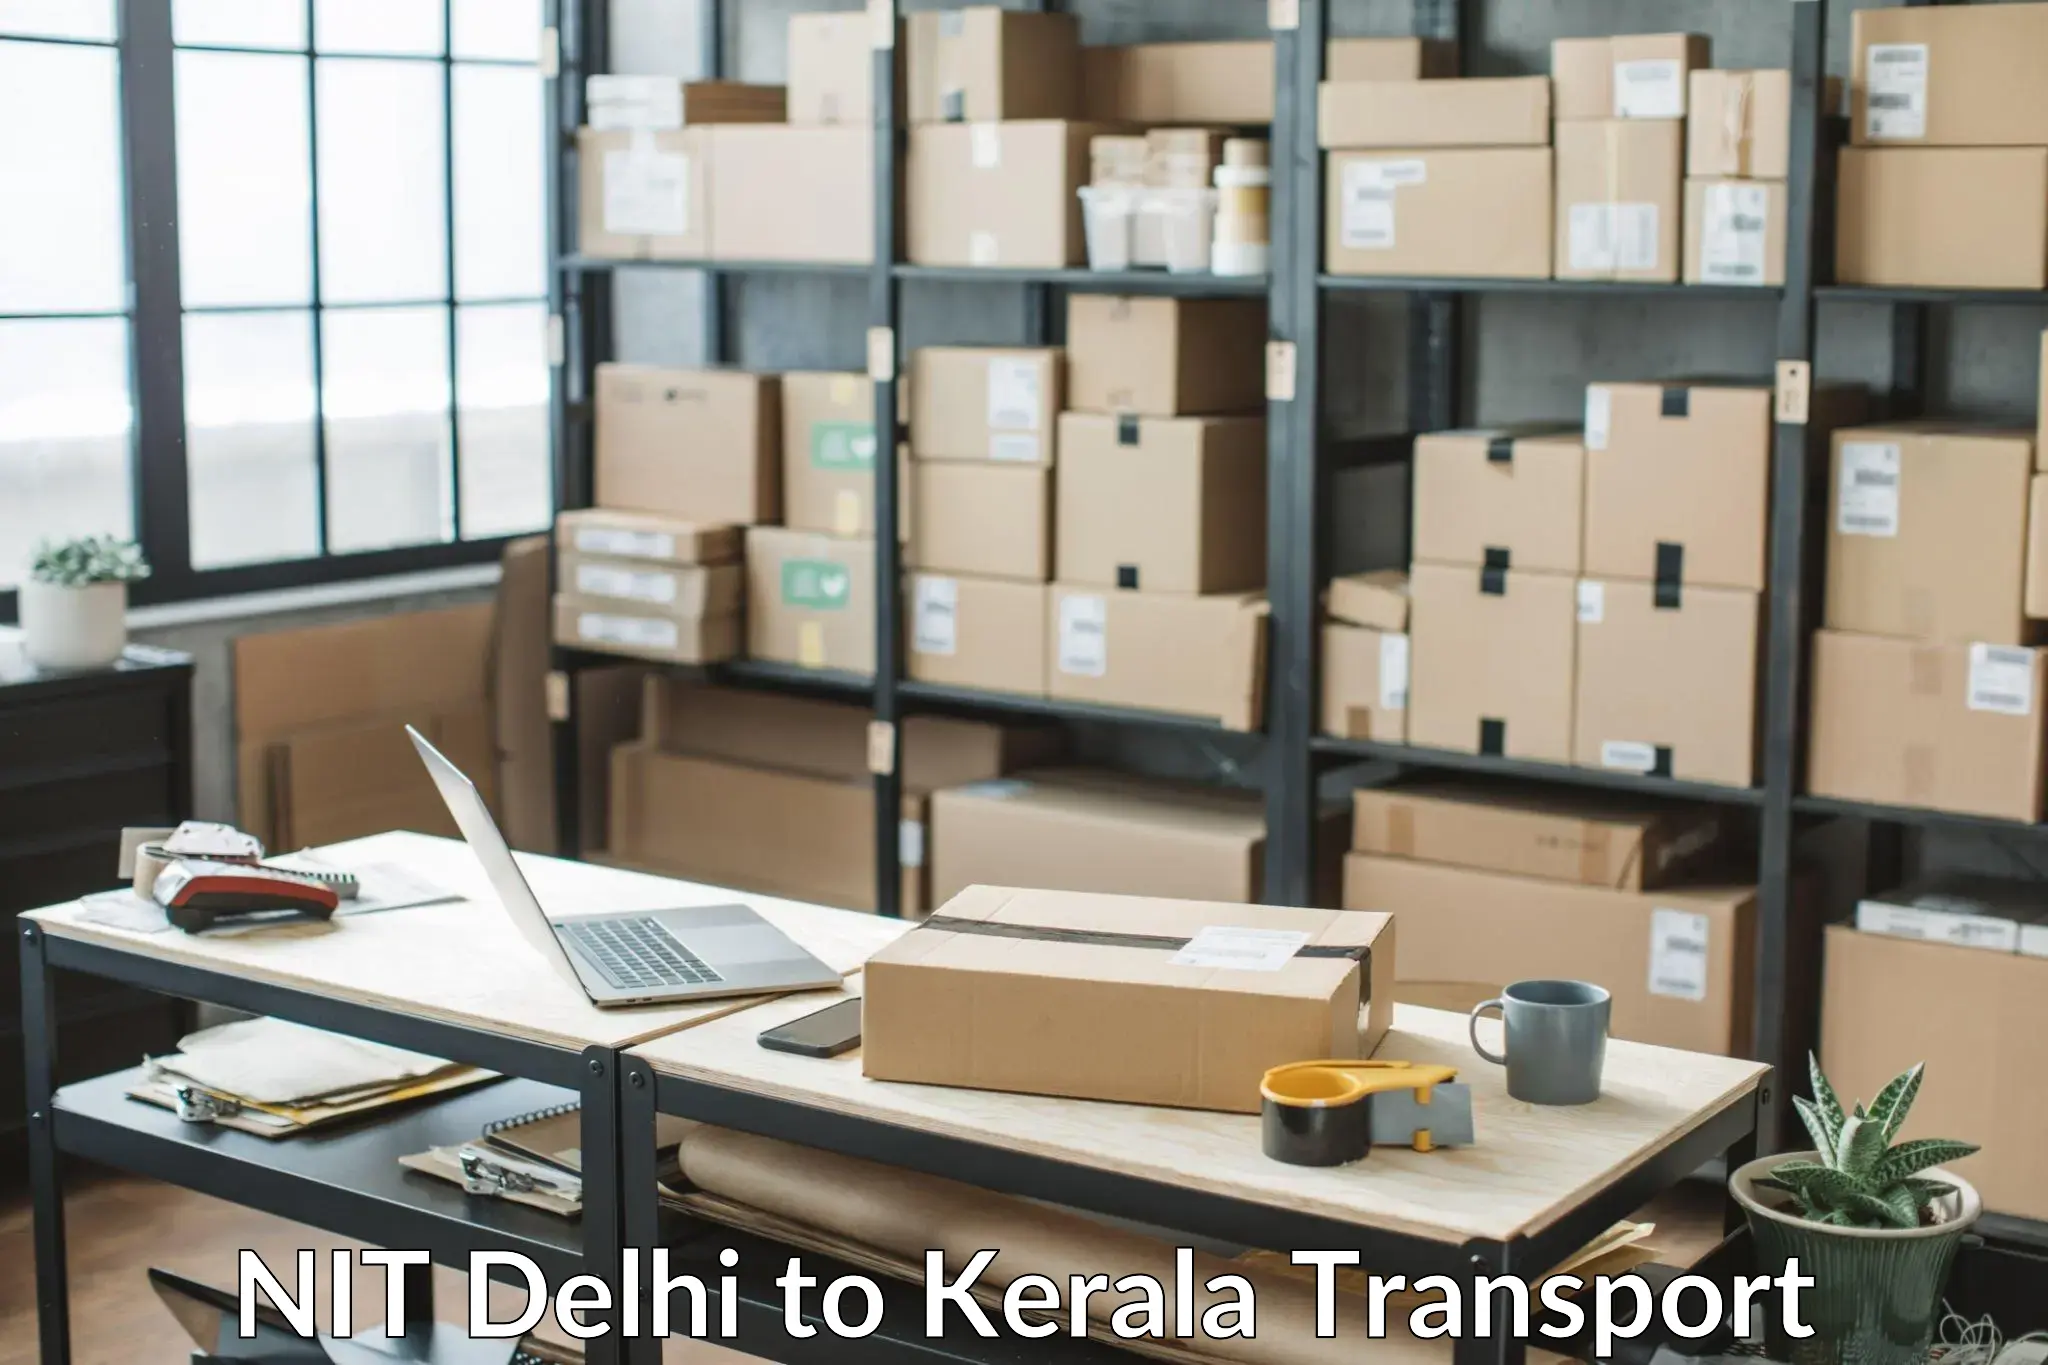 Nearby transport service NIT Delhi to Neyyattinkara